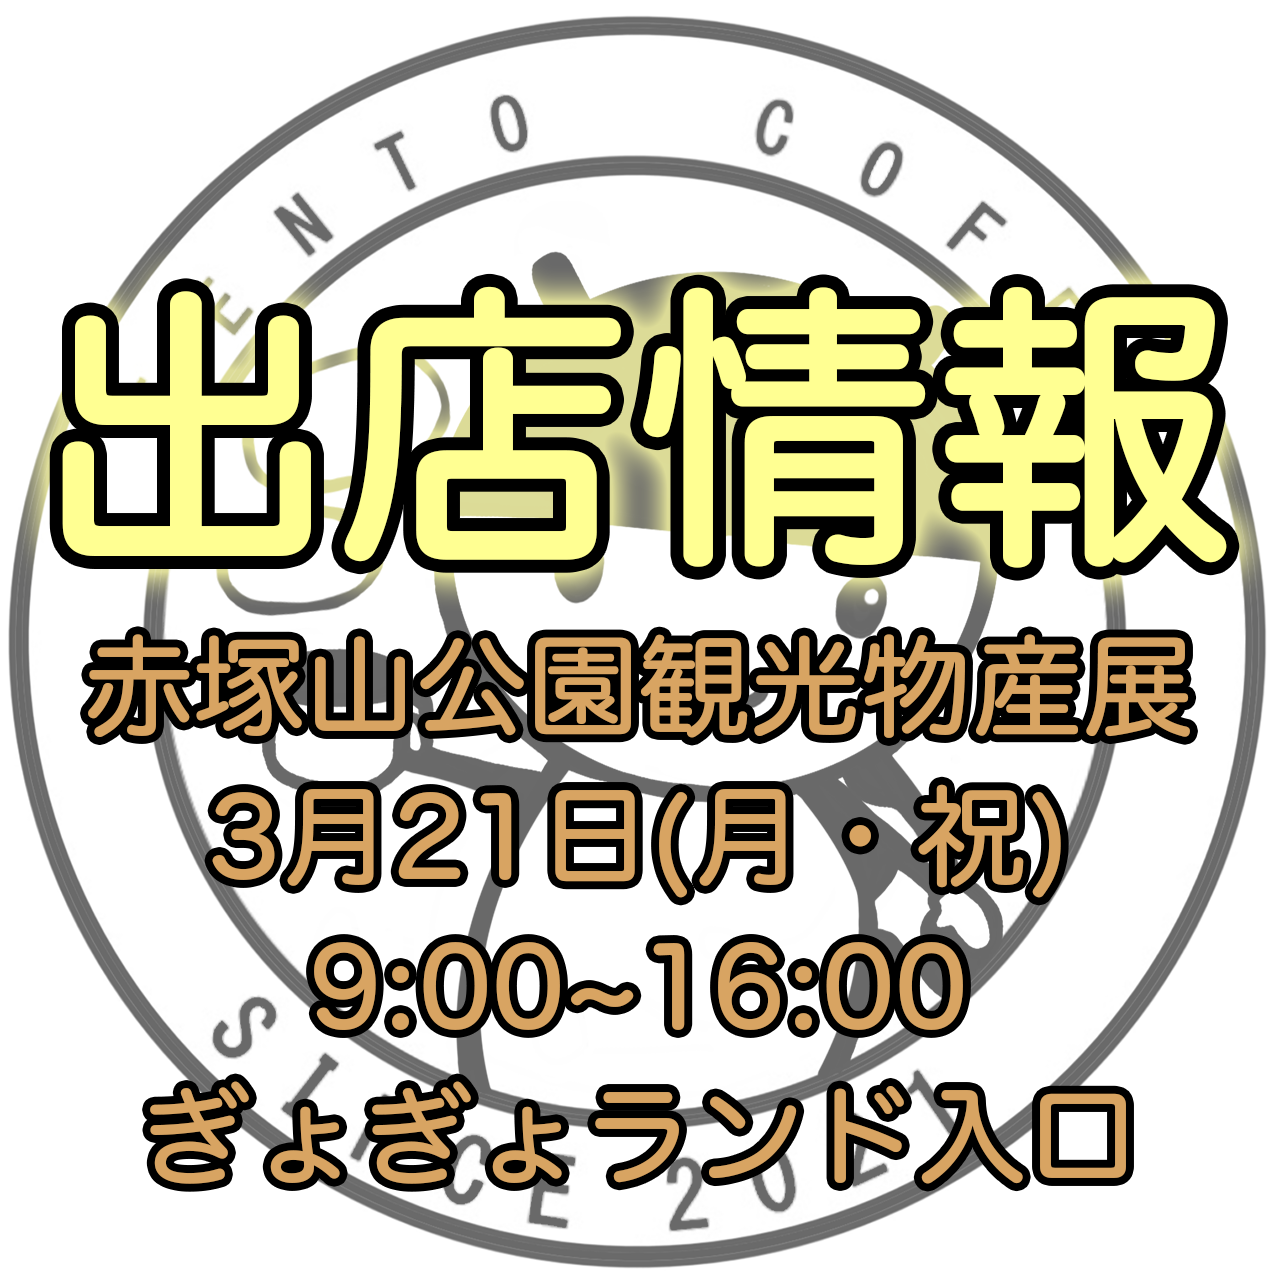 【出店情報】3月21日「赤塚山公園観光物産展」